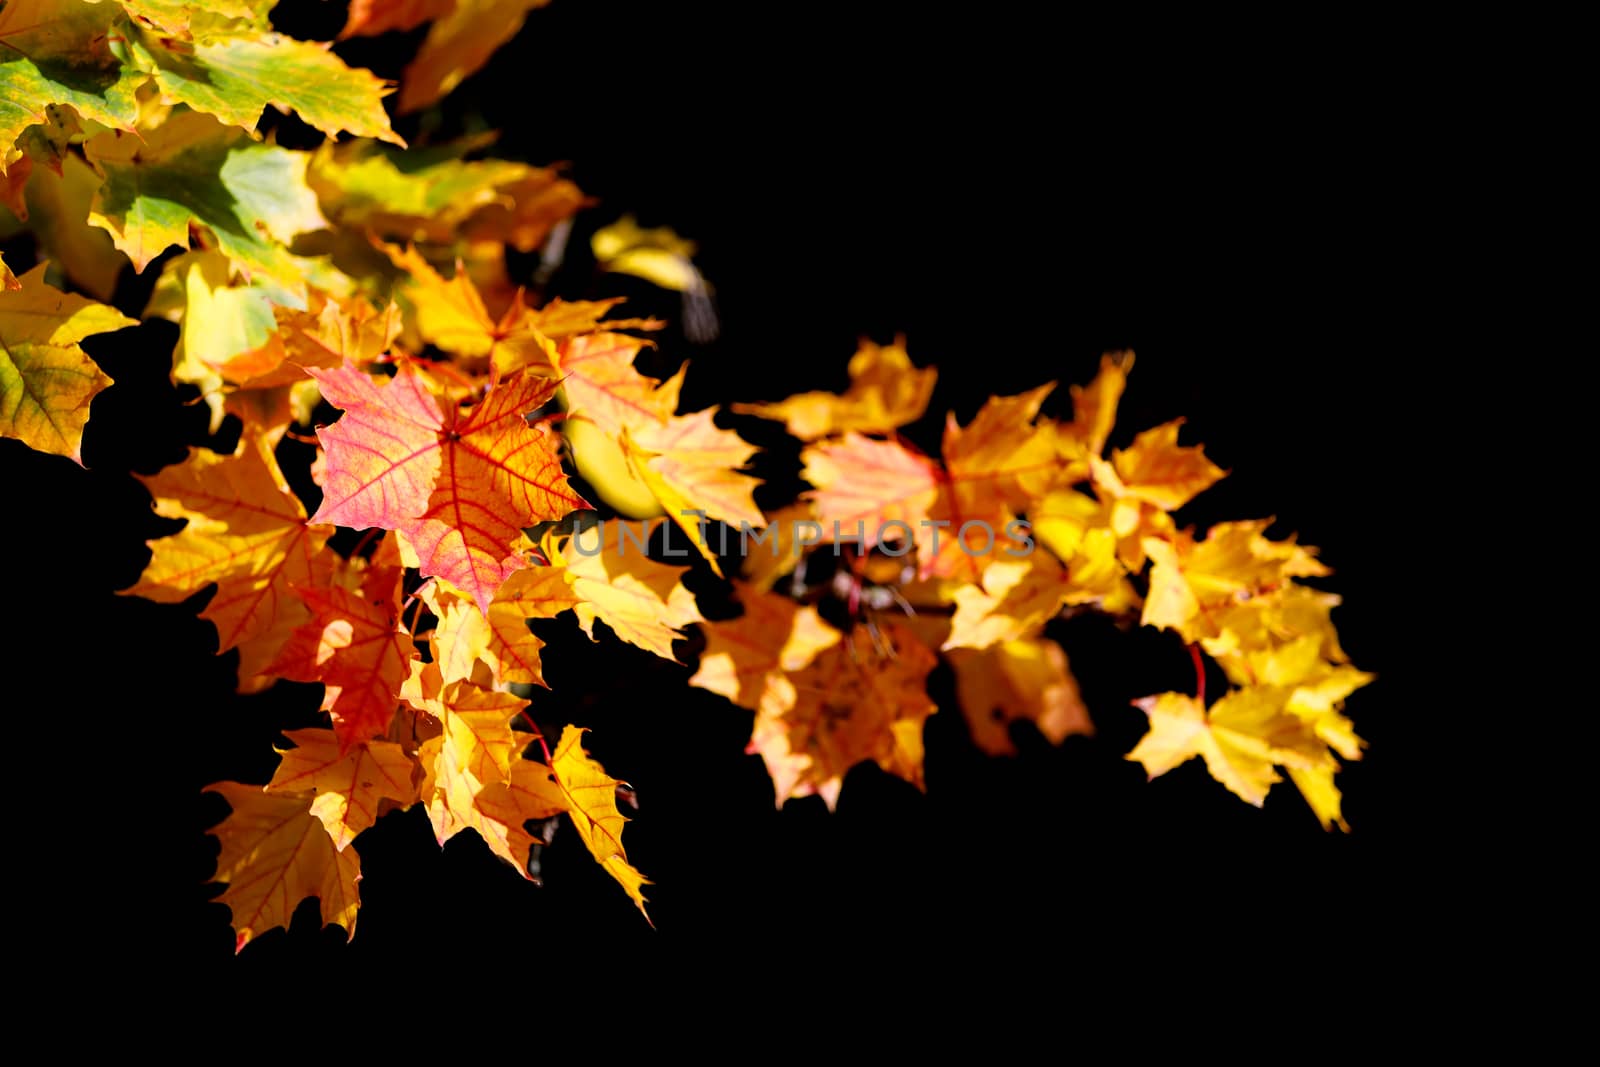 Orange autumn leaves background on black by artush